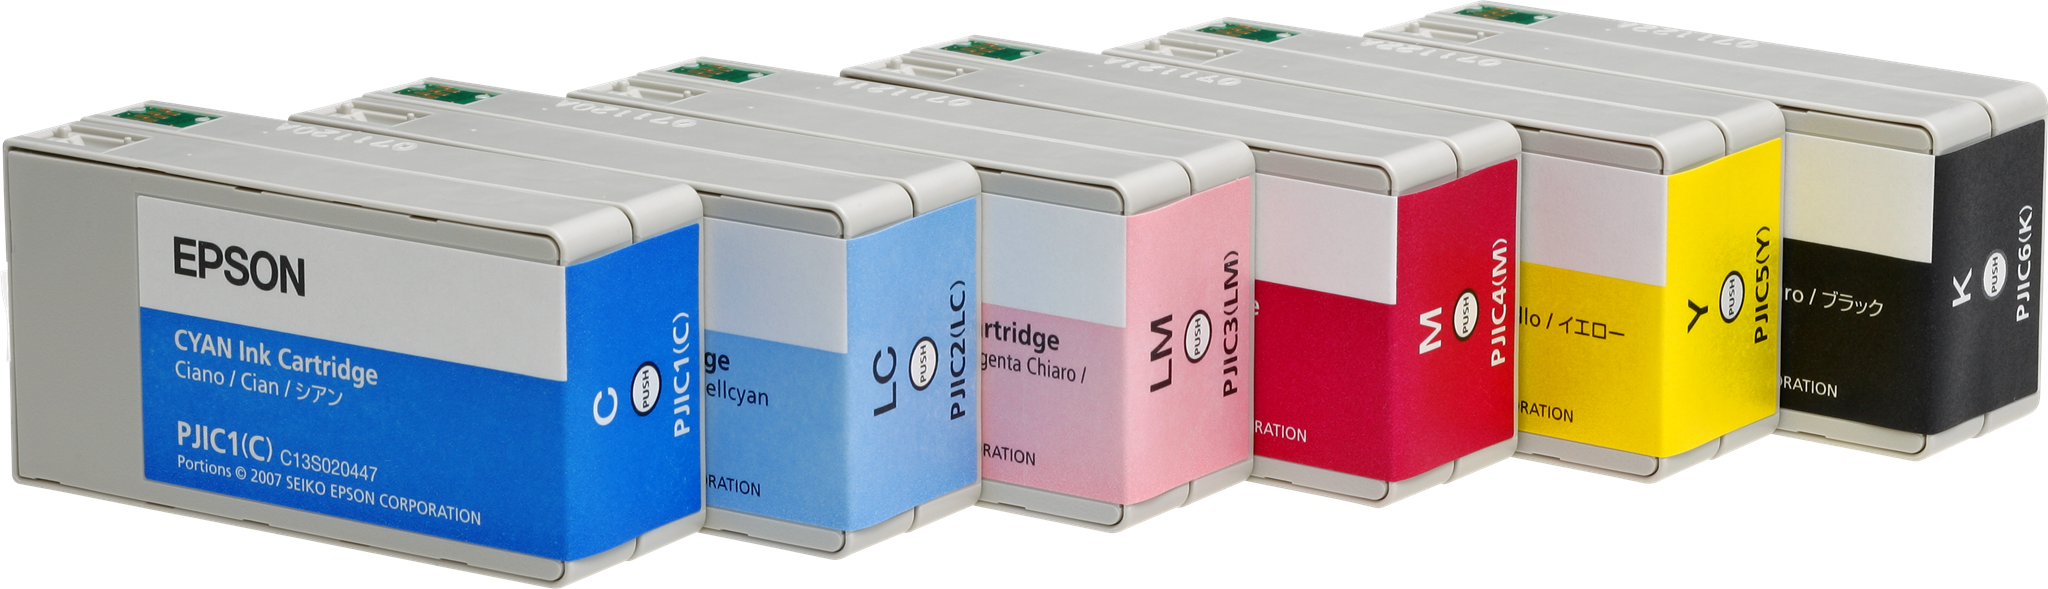 Afbeelding van Epson Cartridge set 6 stuks voor PP-100/50 Producent